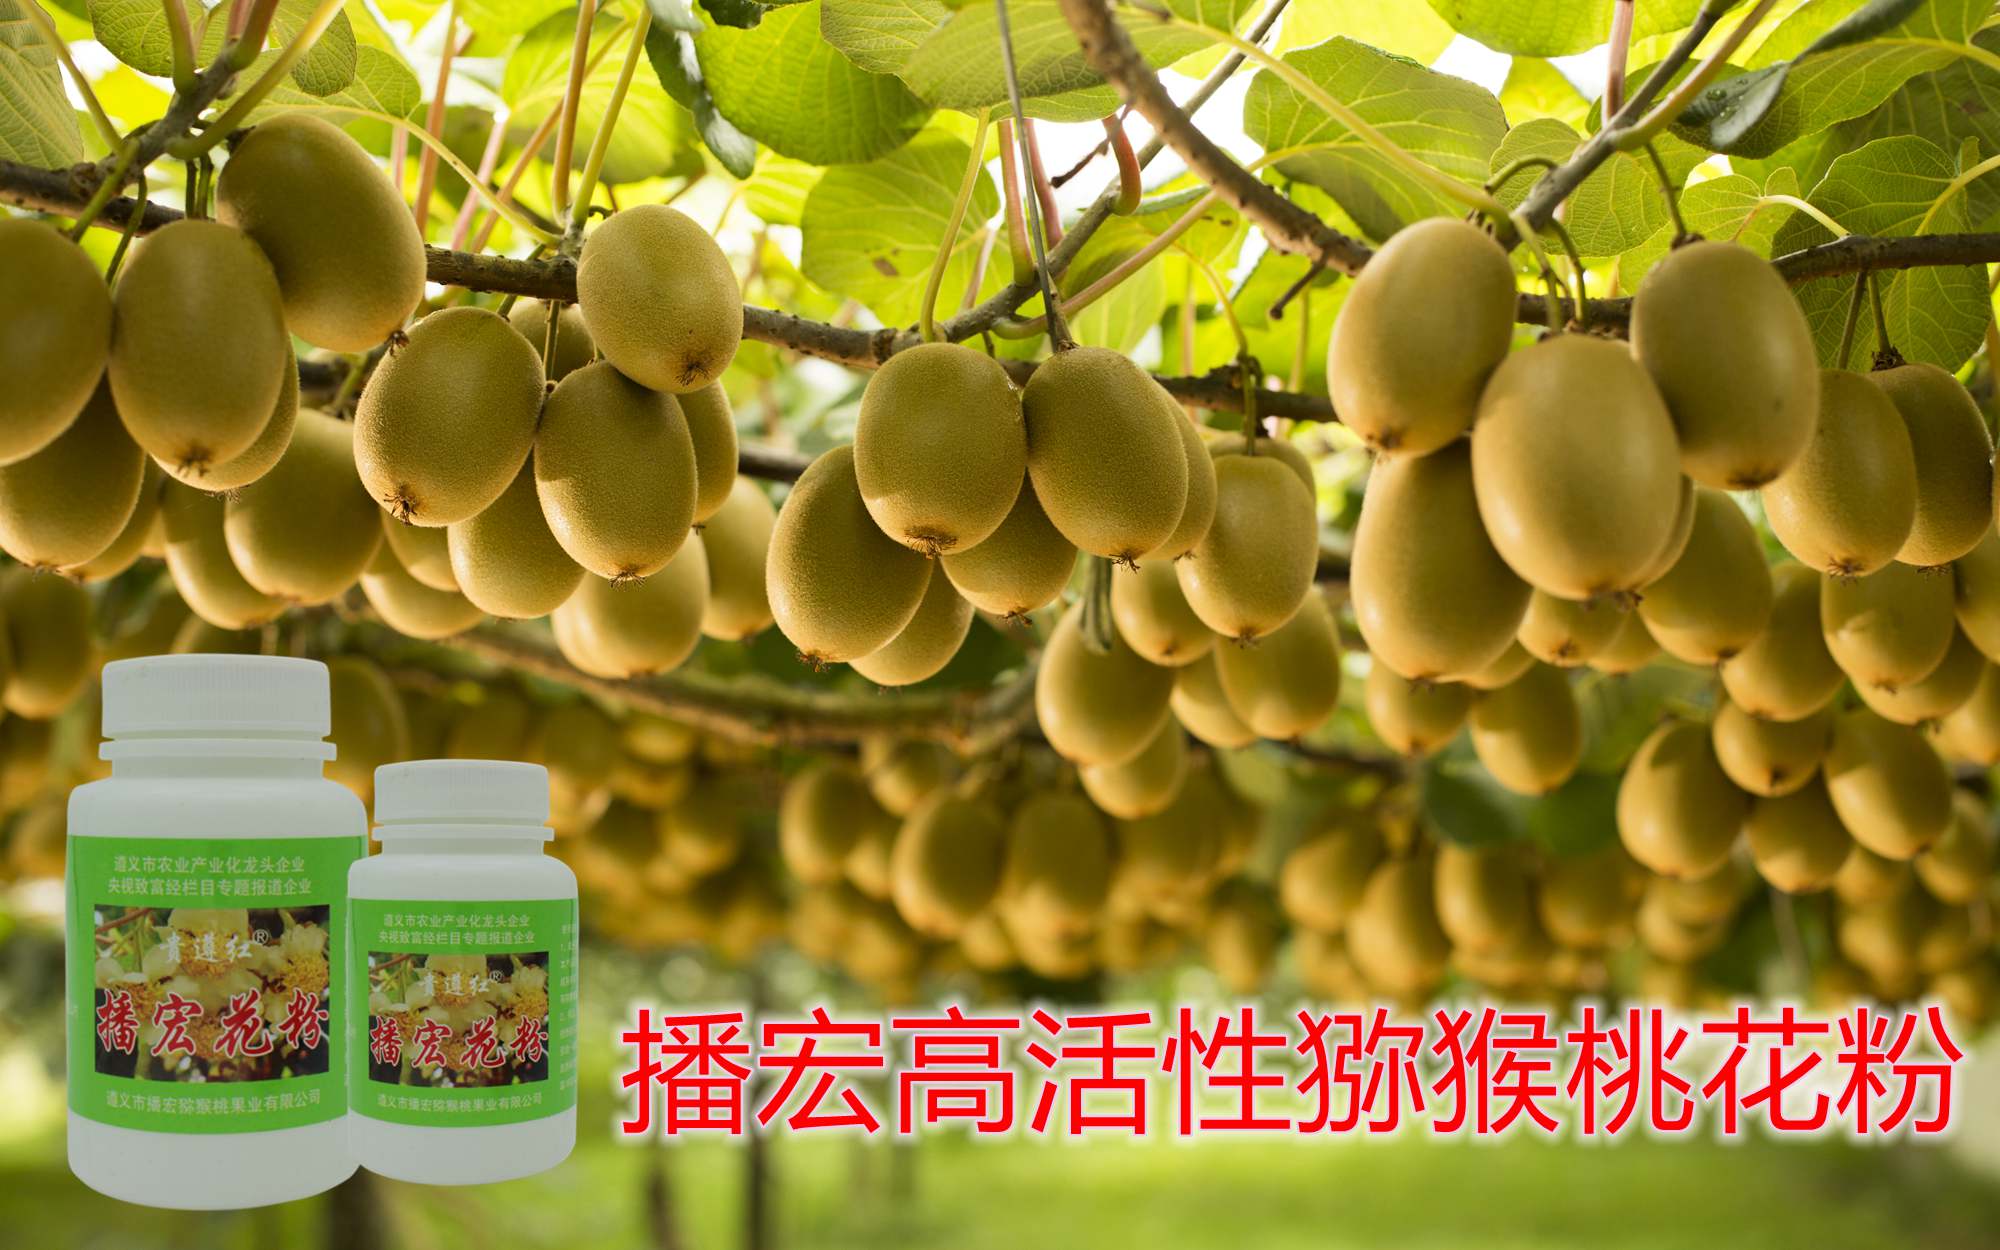 贵州六盘水市是高品质猕猴桃产区之一